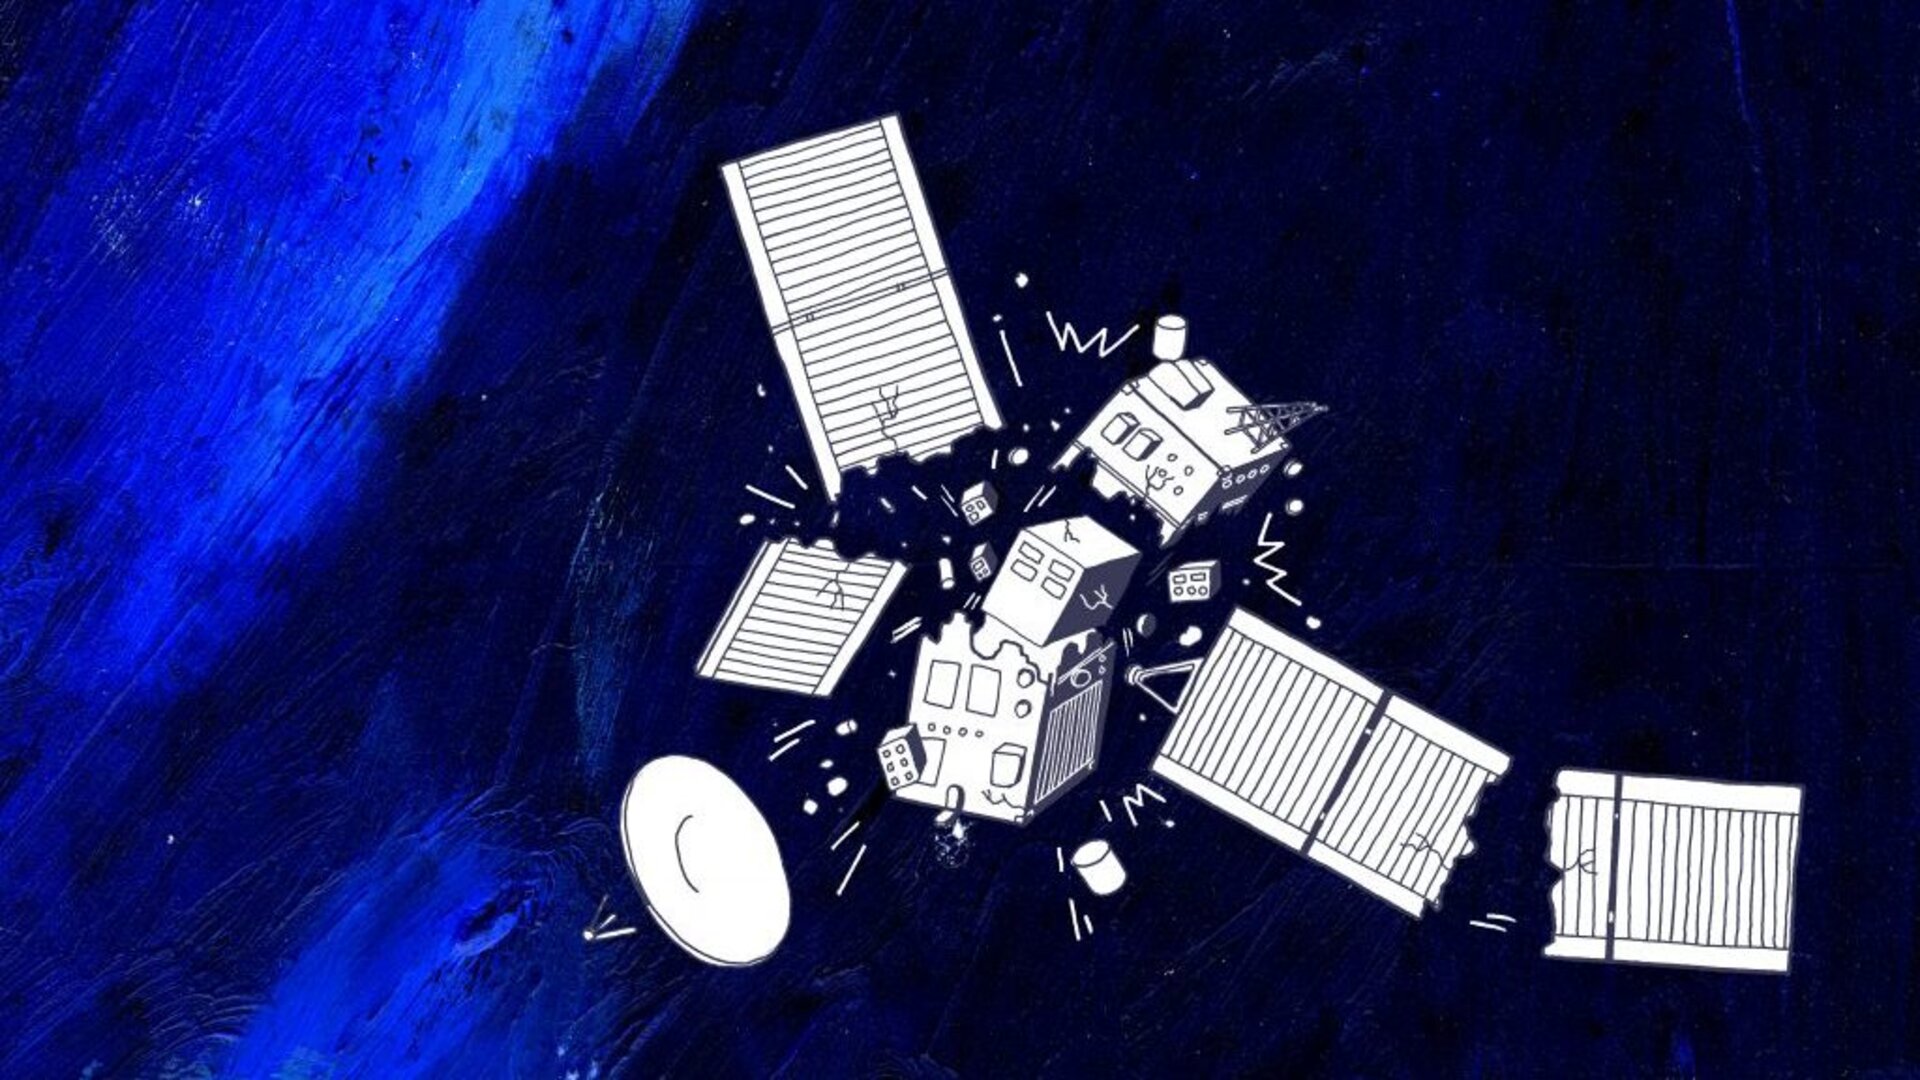 Satellite break-up